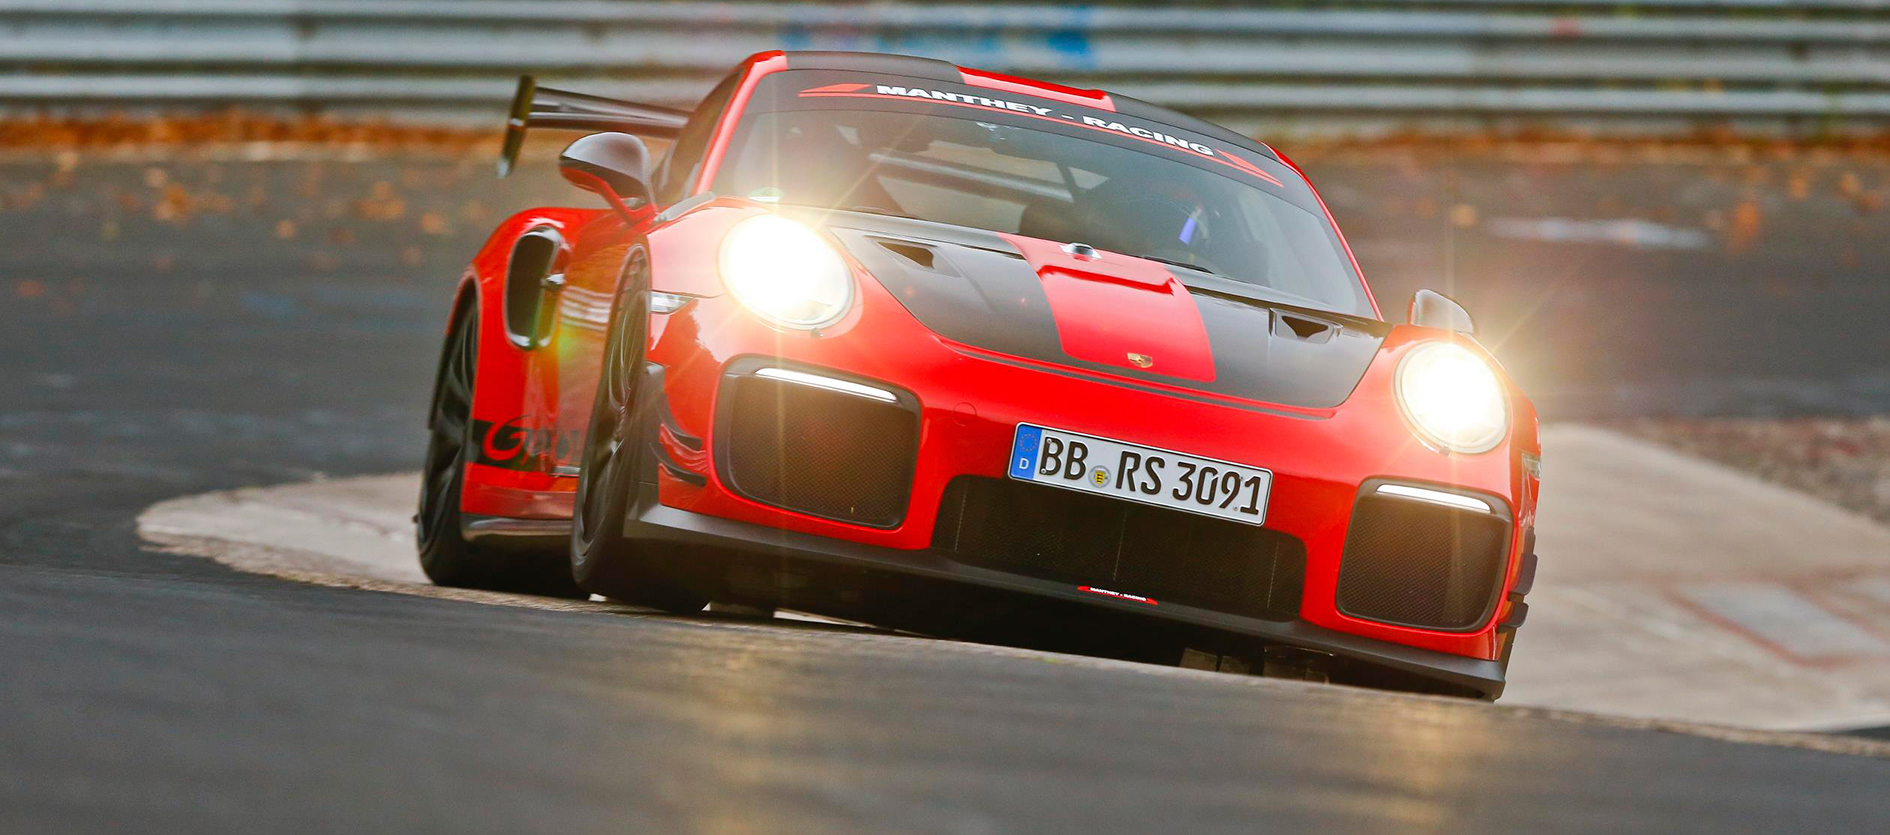 Porsche GT2 RS MR nuevo récord en el circuito de Nürburgring